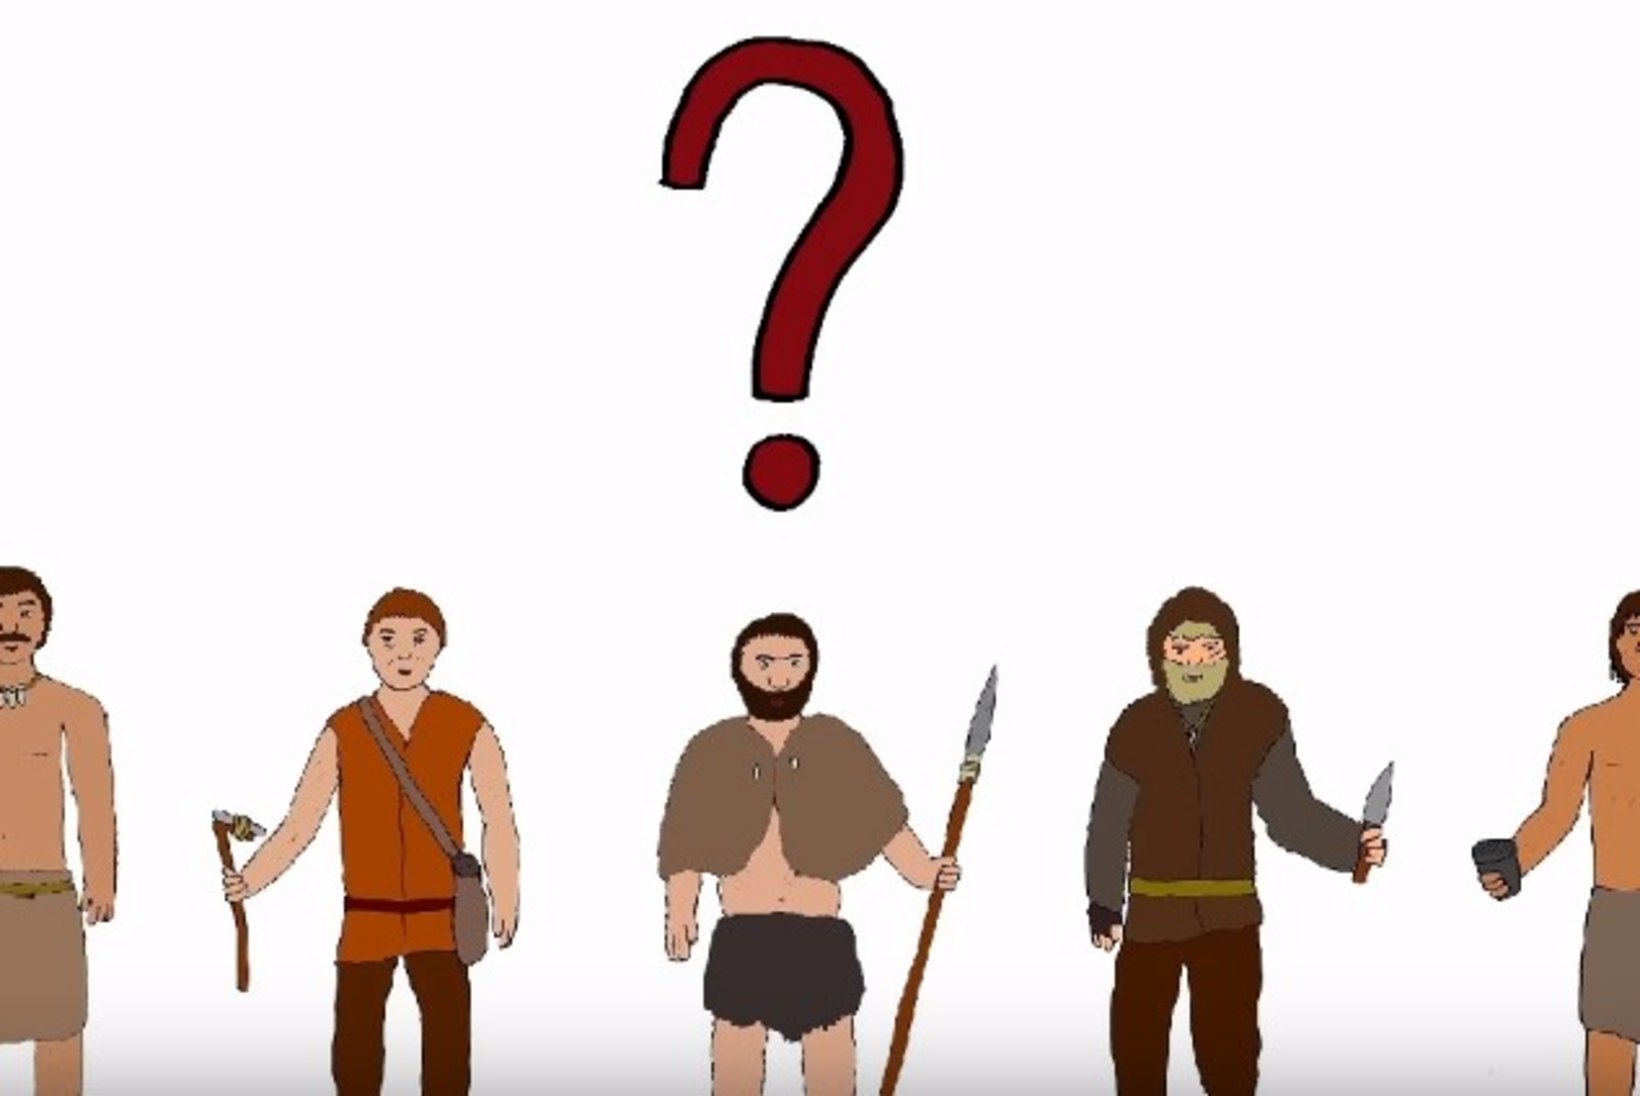 VIDEO | Ajalootund: kes on eestlaste viis esiisa?